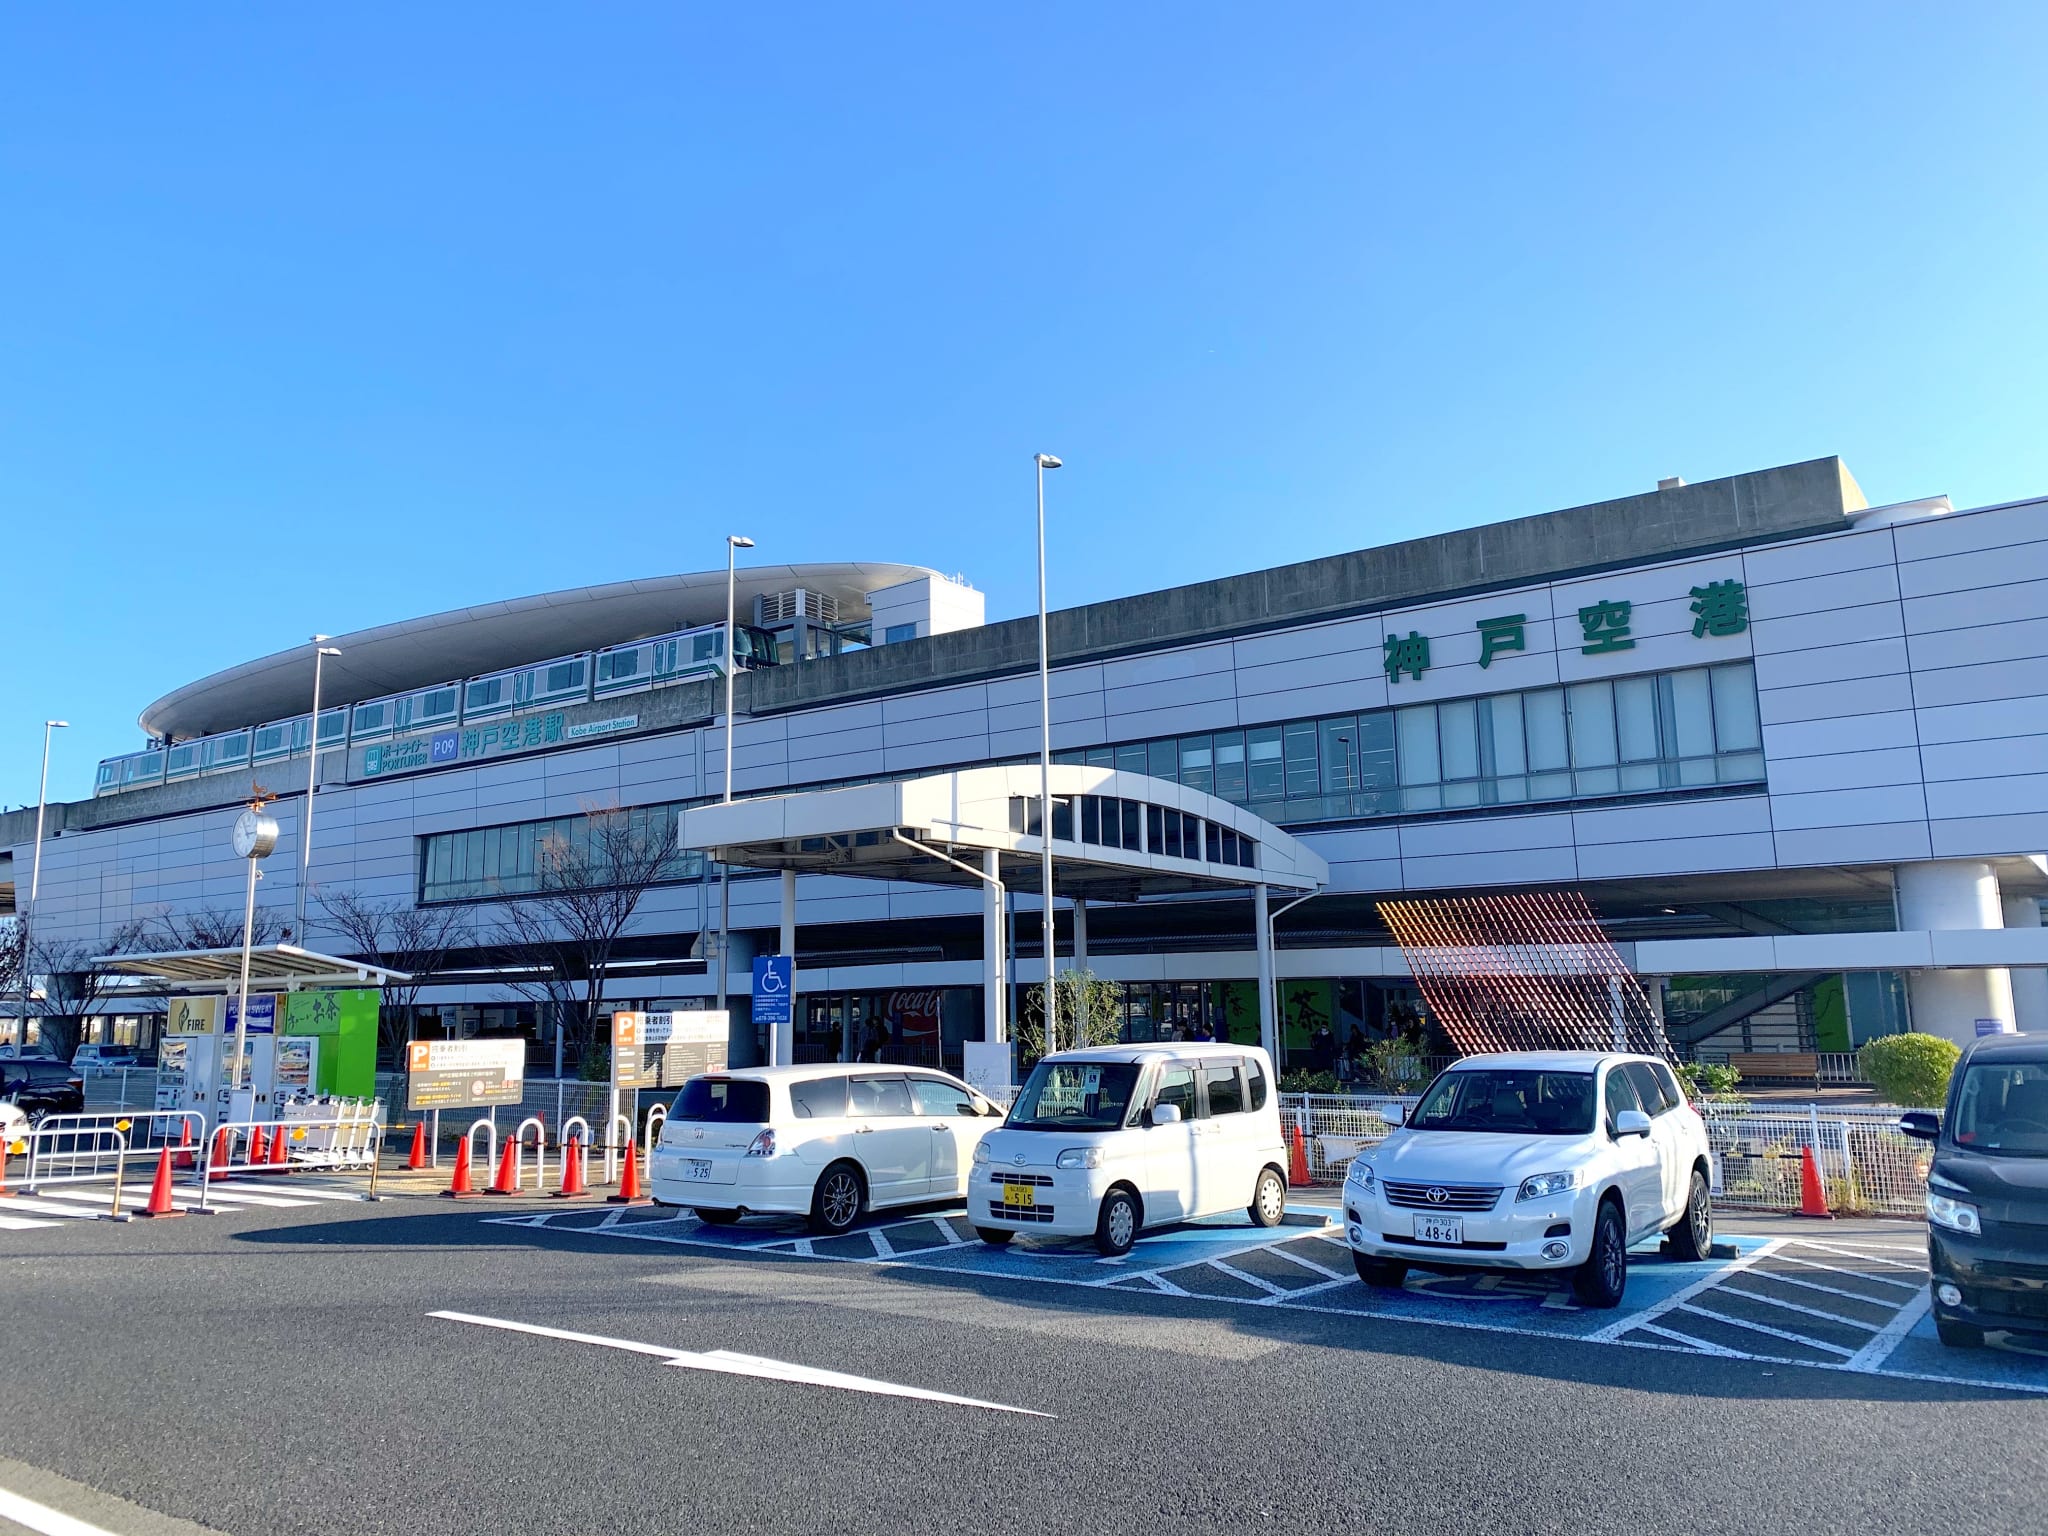 神戸空港 厳選6駐車場 混雑 予約 関空にも快適で無料 安い裏ワザはこれ 駐車場の神様